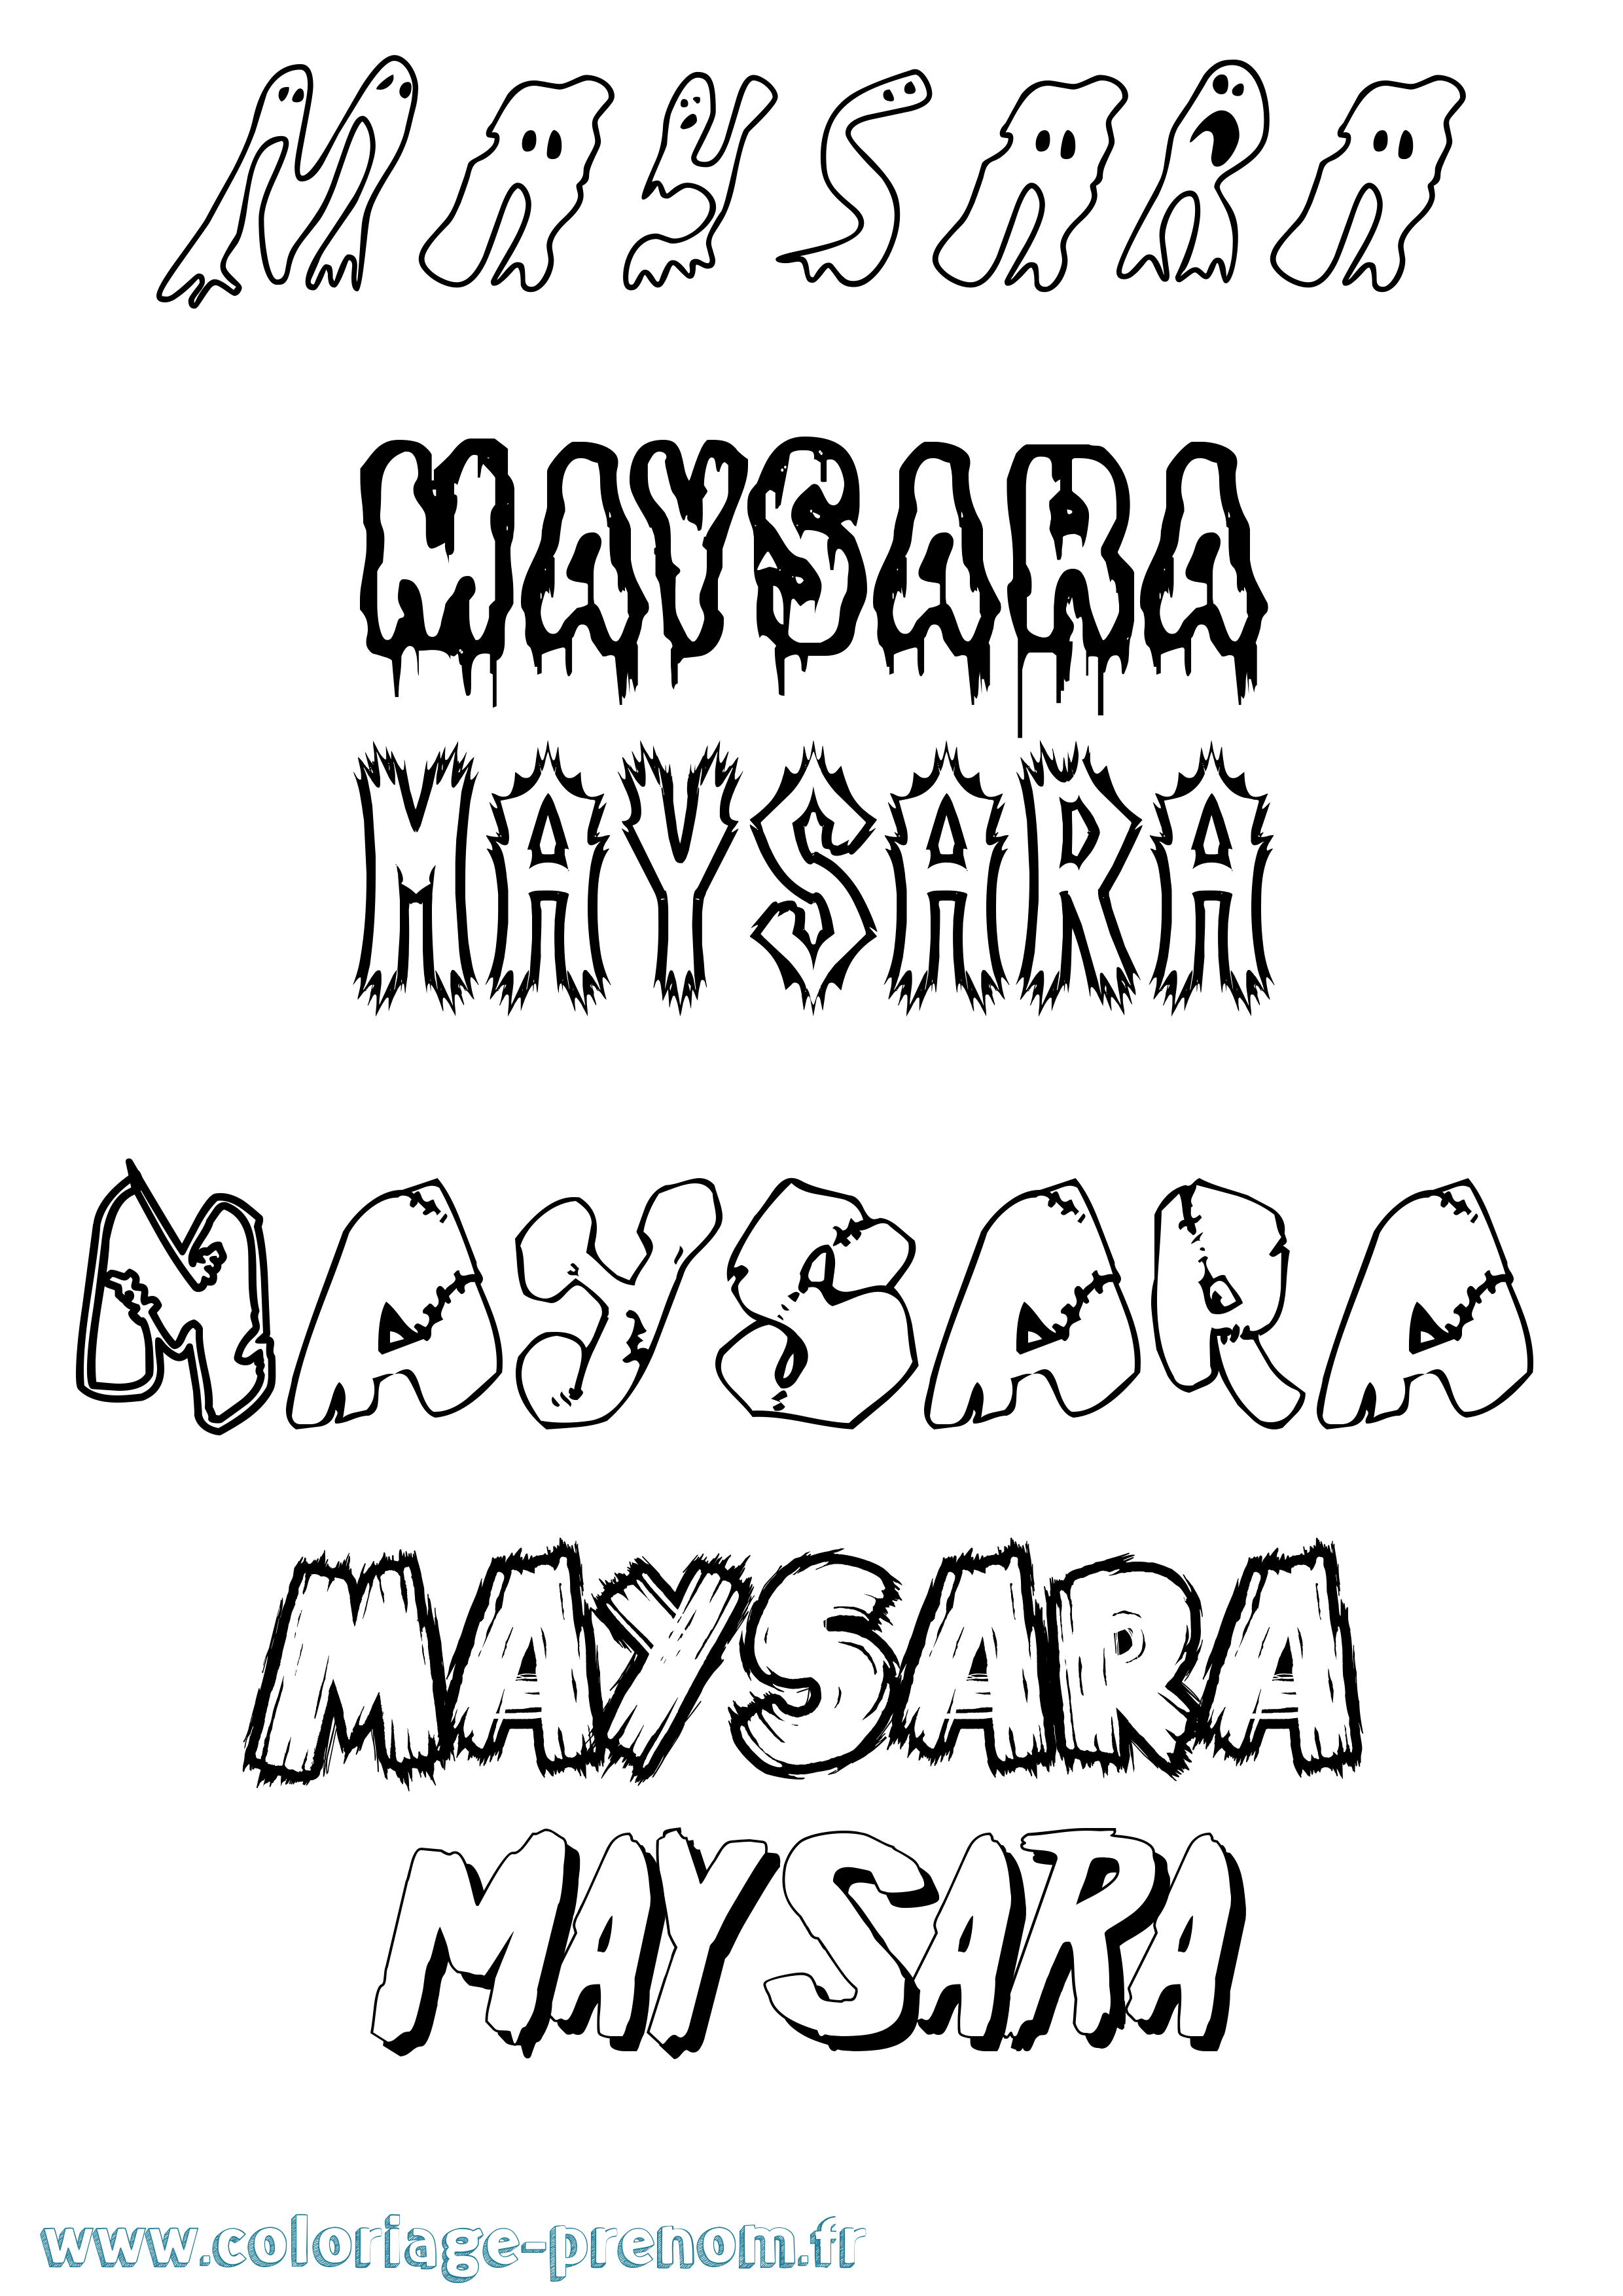 Coloriage prénom Maysara Frisson